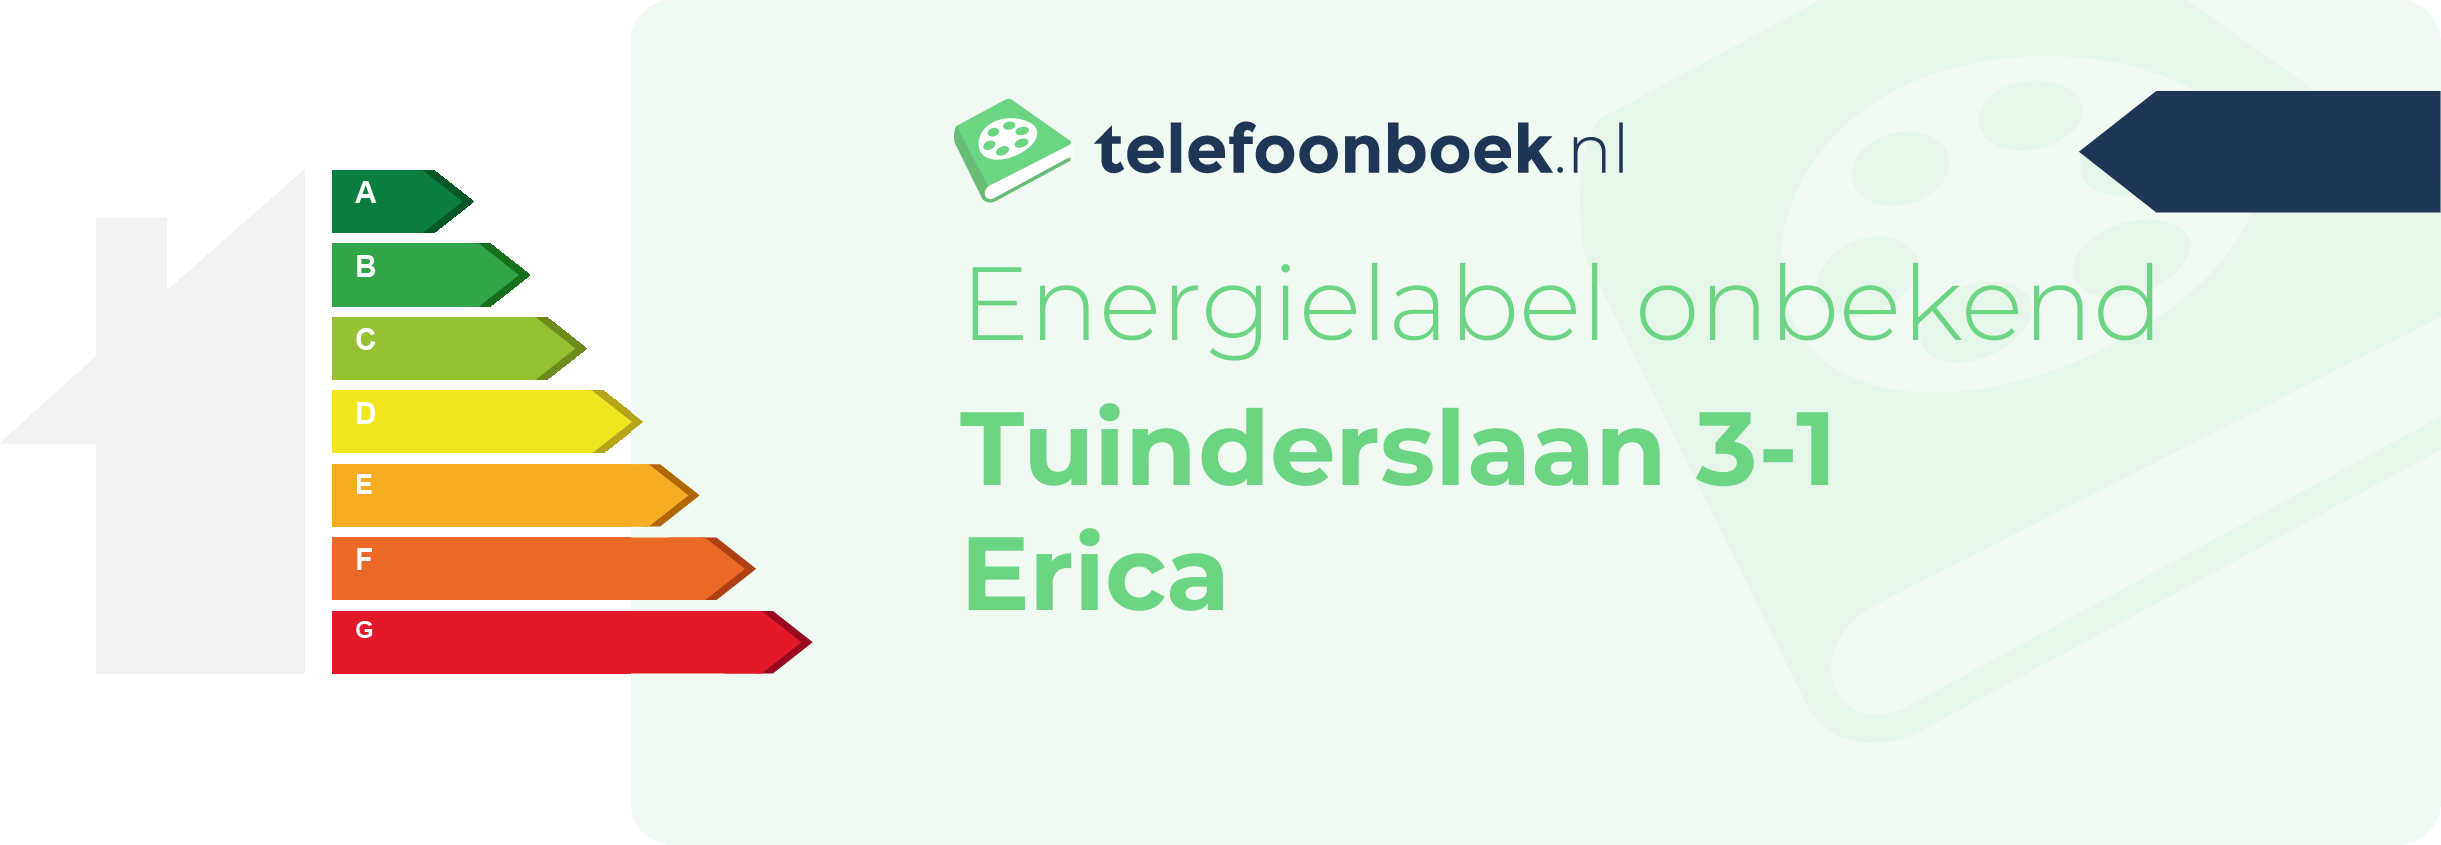 Energielabel Tuinderslaan 3-1 Erica